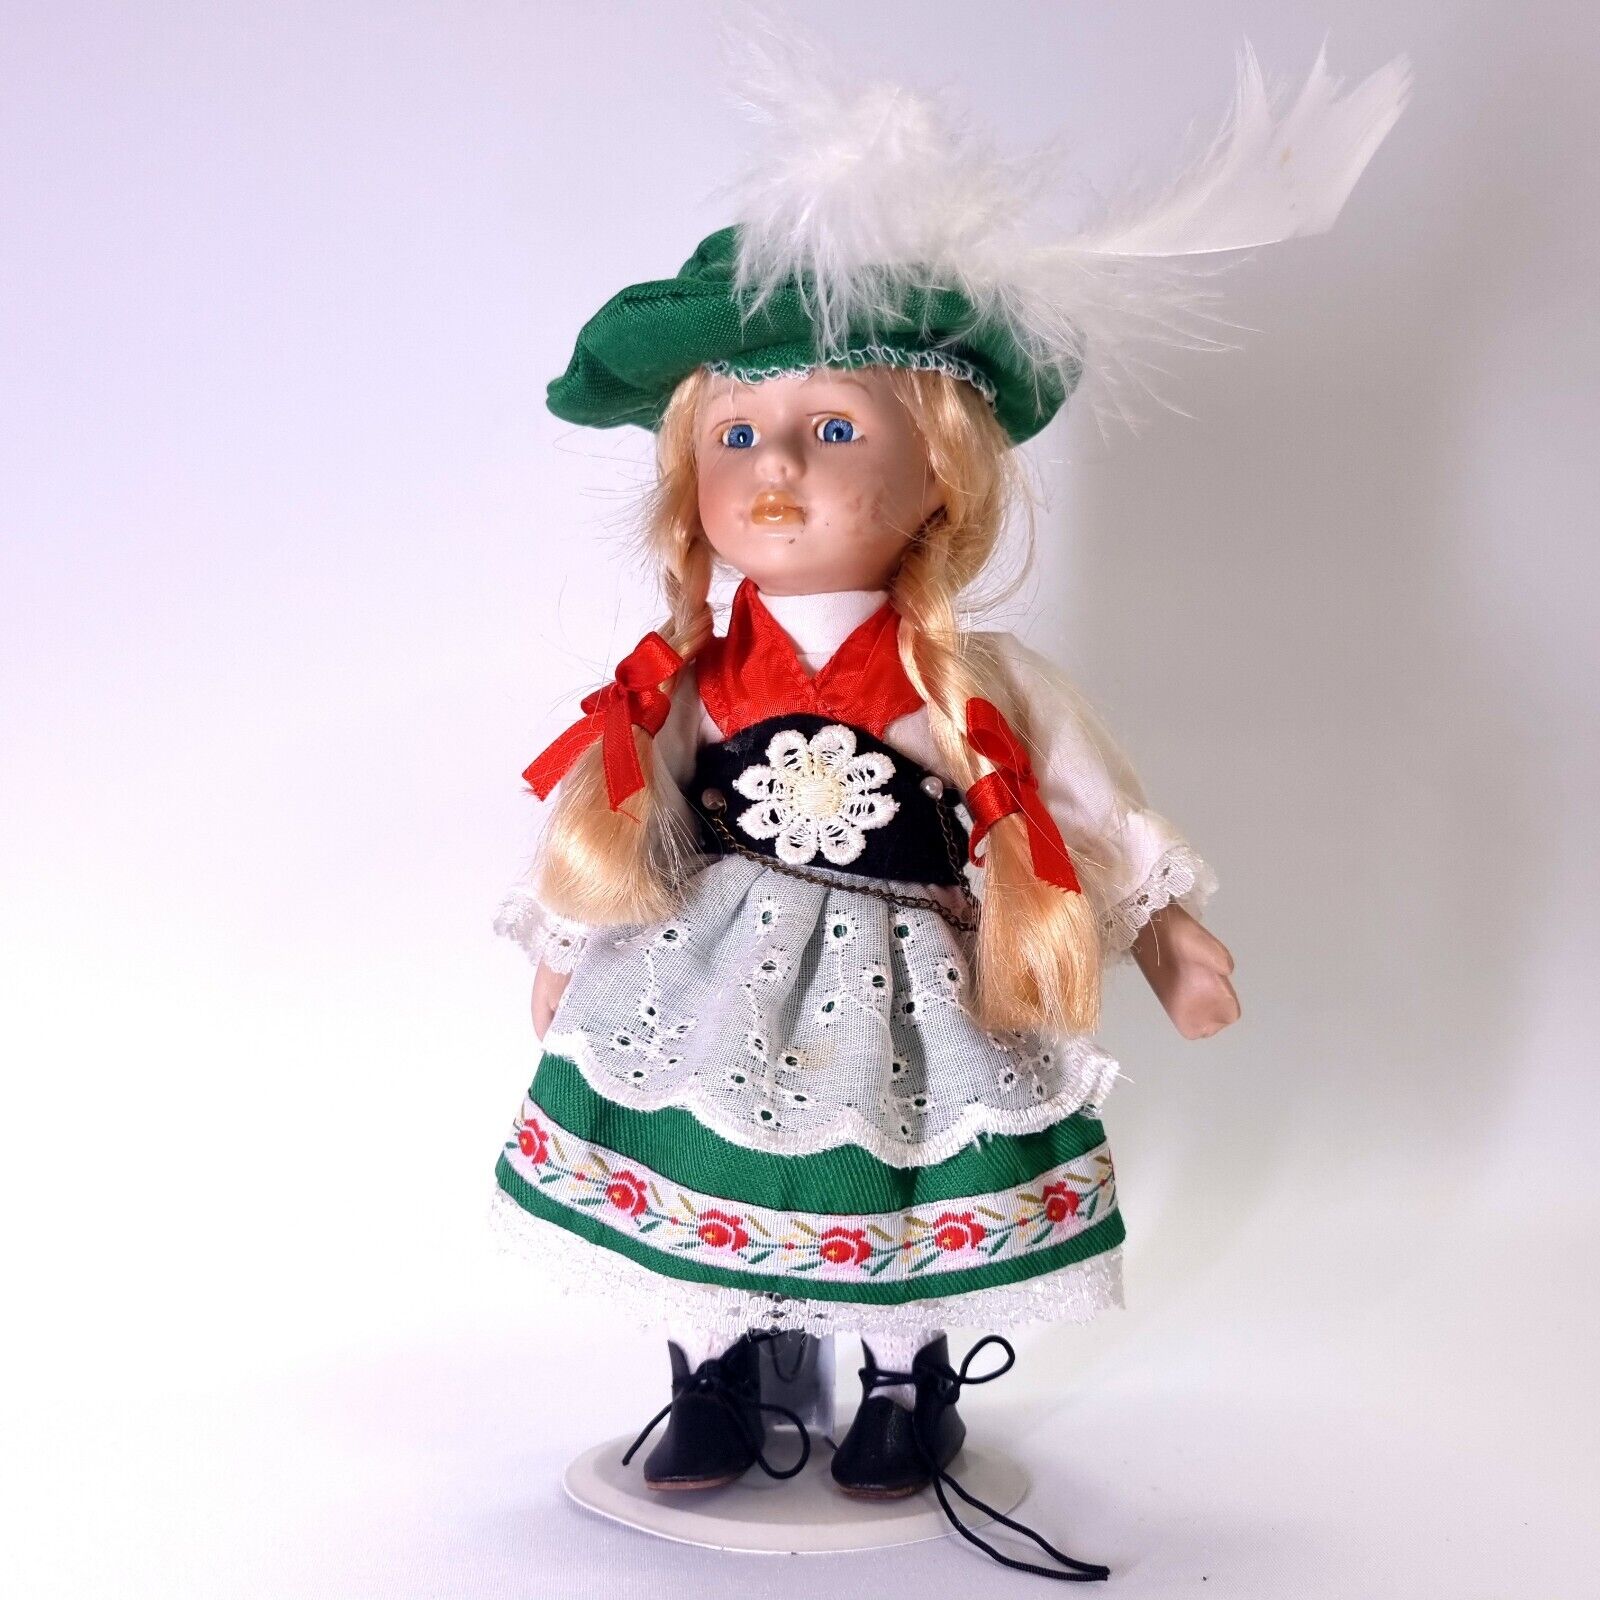 Vintage Old 1950s Bavarian Doll Collectable German Schmider Kathi Folklore